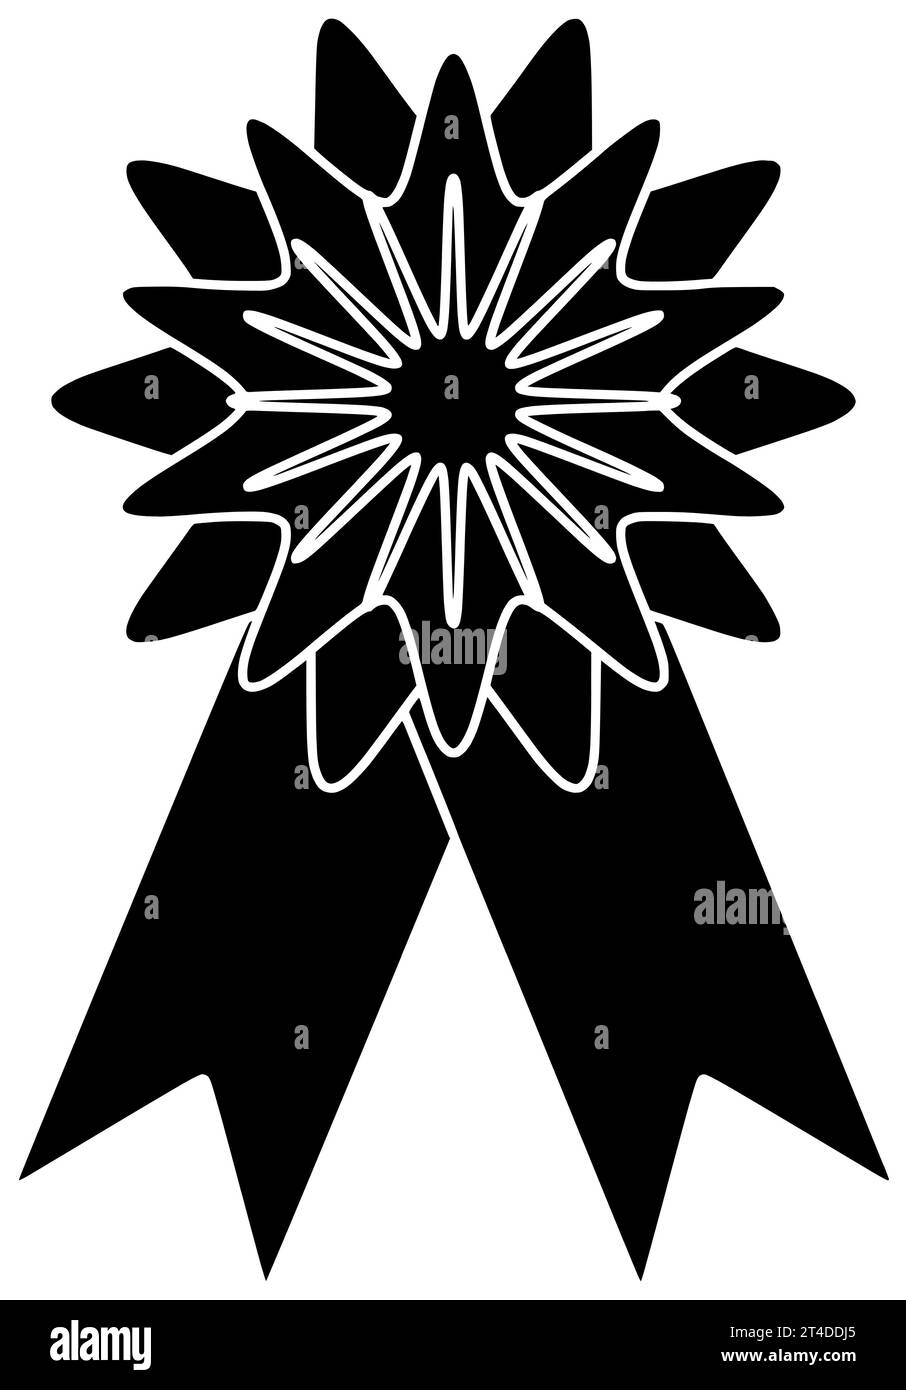 médaille noir silhouette sport trophée illustration vainqueur icône badge logo champion récompense victoire victoire concours succès succès honneur or Banque D'Images